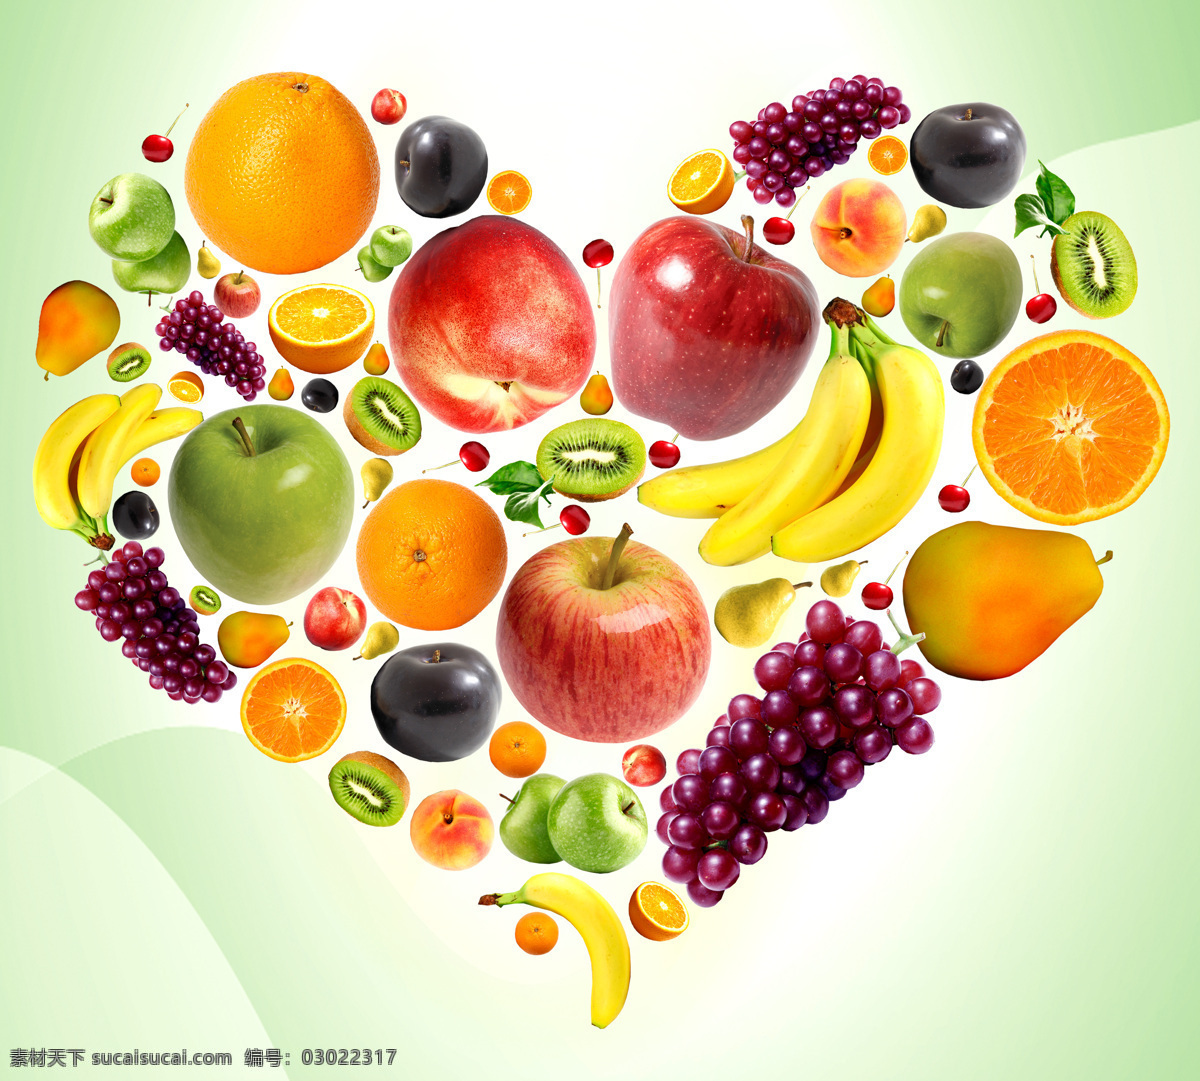 水果图片 各种水果 水果图 彩色水果 苹果 提子 葡萄 橙子 草莓 梨 油桃 香蕉